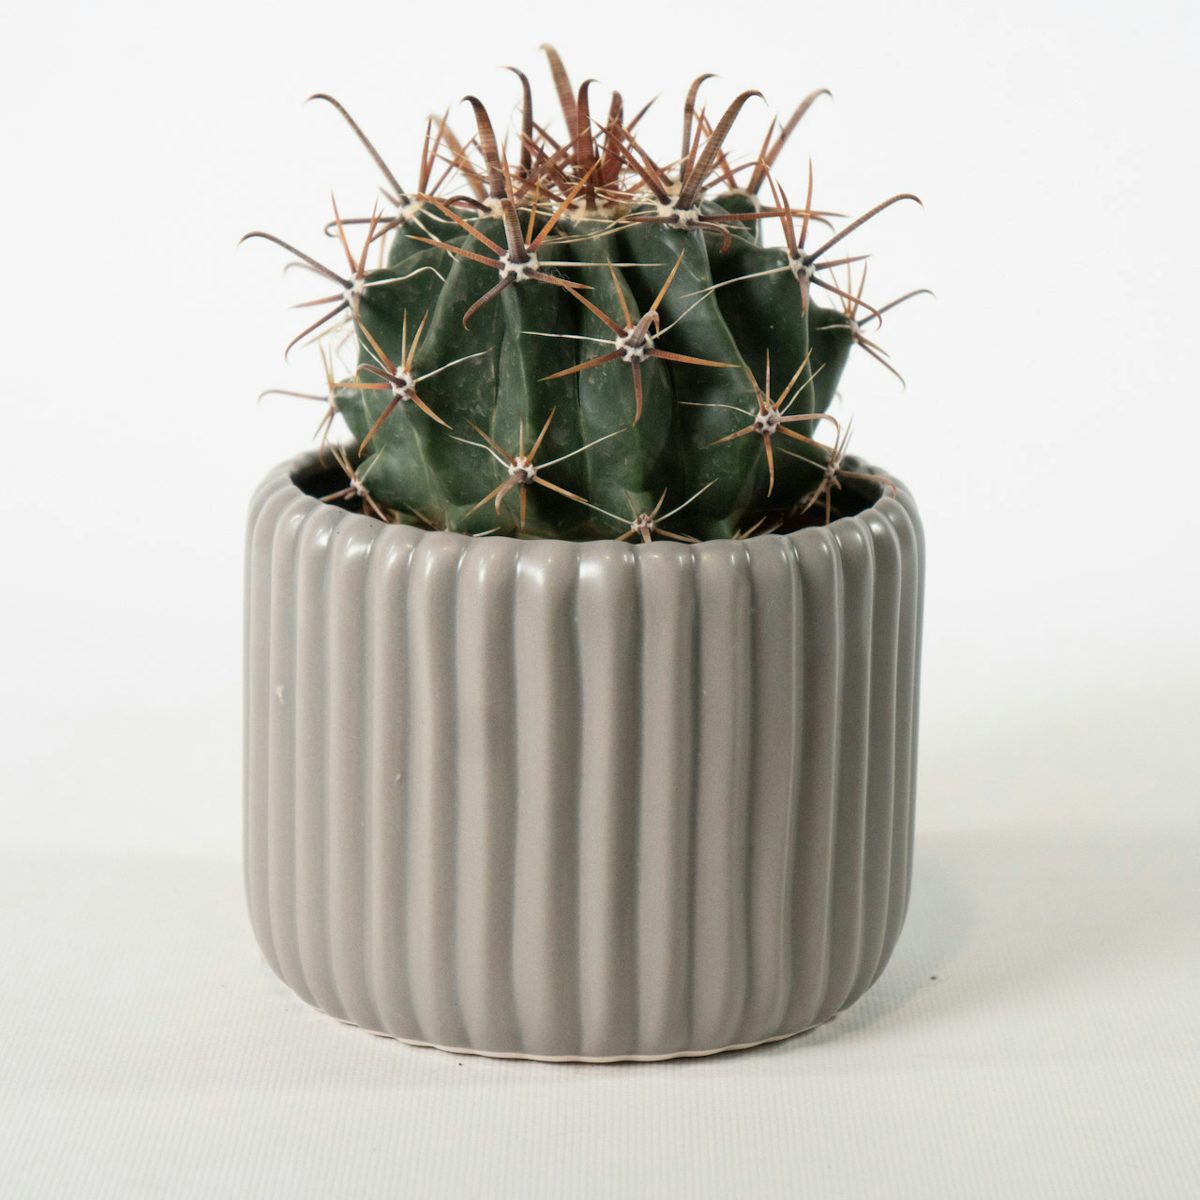 Immortal Cactus with Grey pot